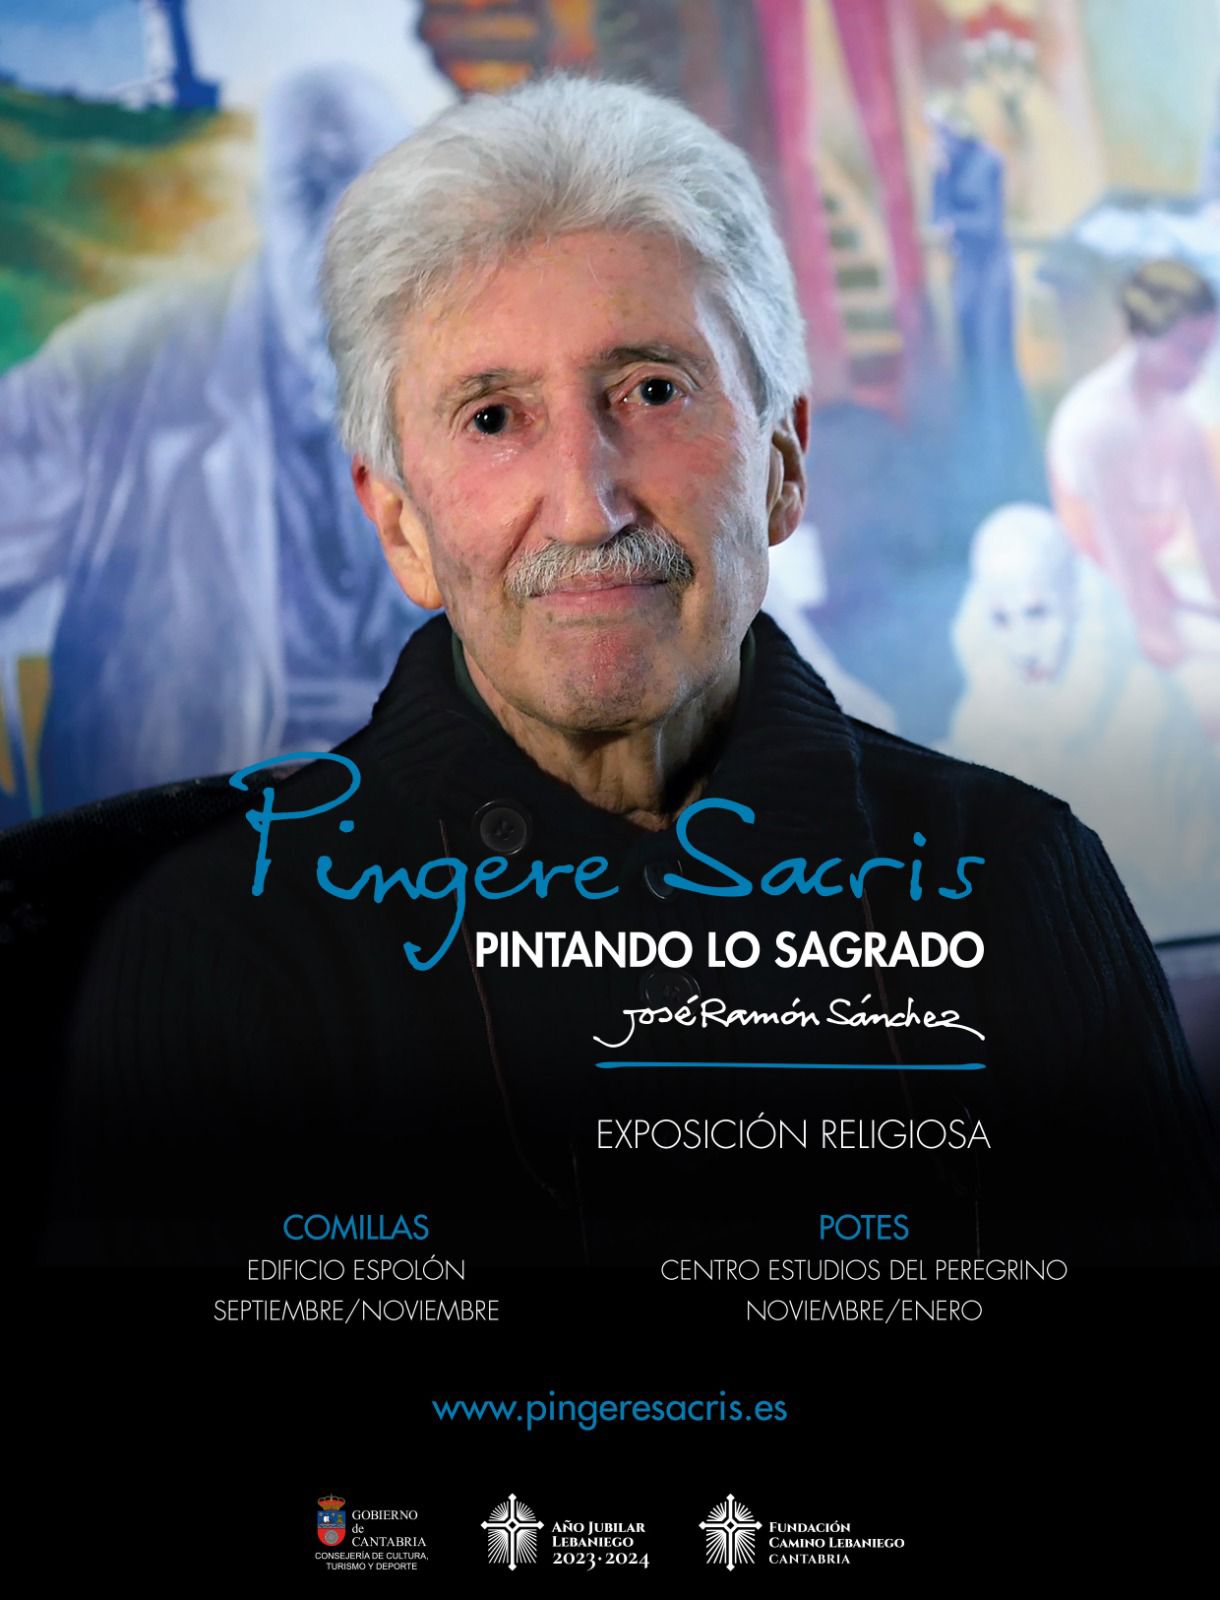 «PINGERE SACRIS. PINTANDO LO SAGRADO»  EXPOSICIÓN DE JOSE RAMÓN SÁNCHEZ